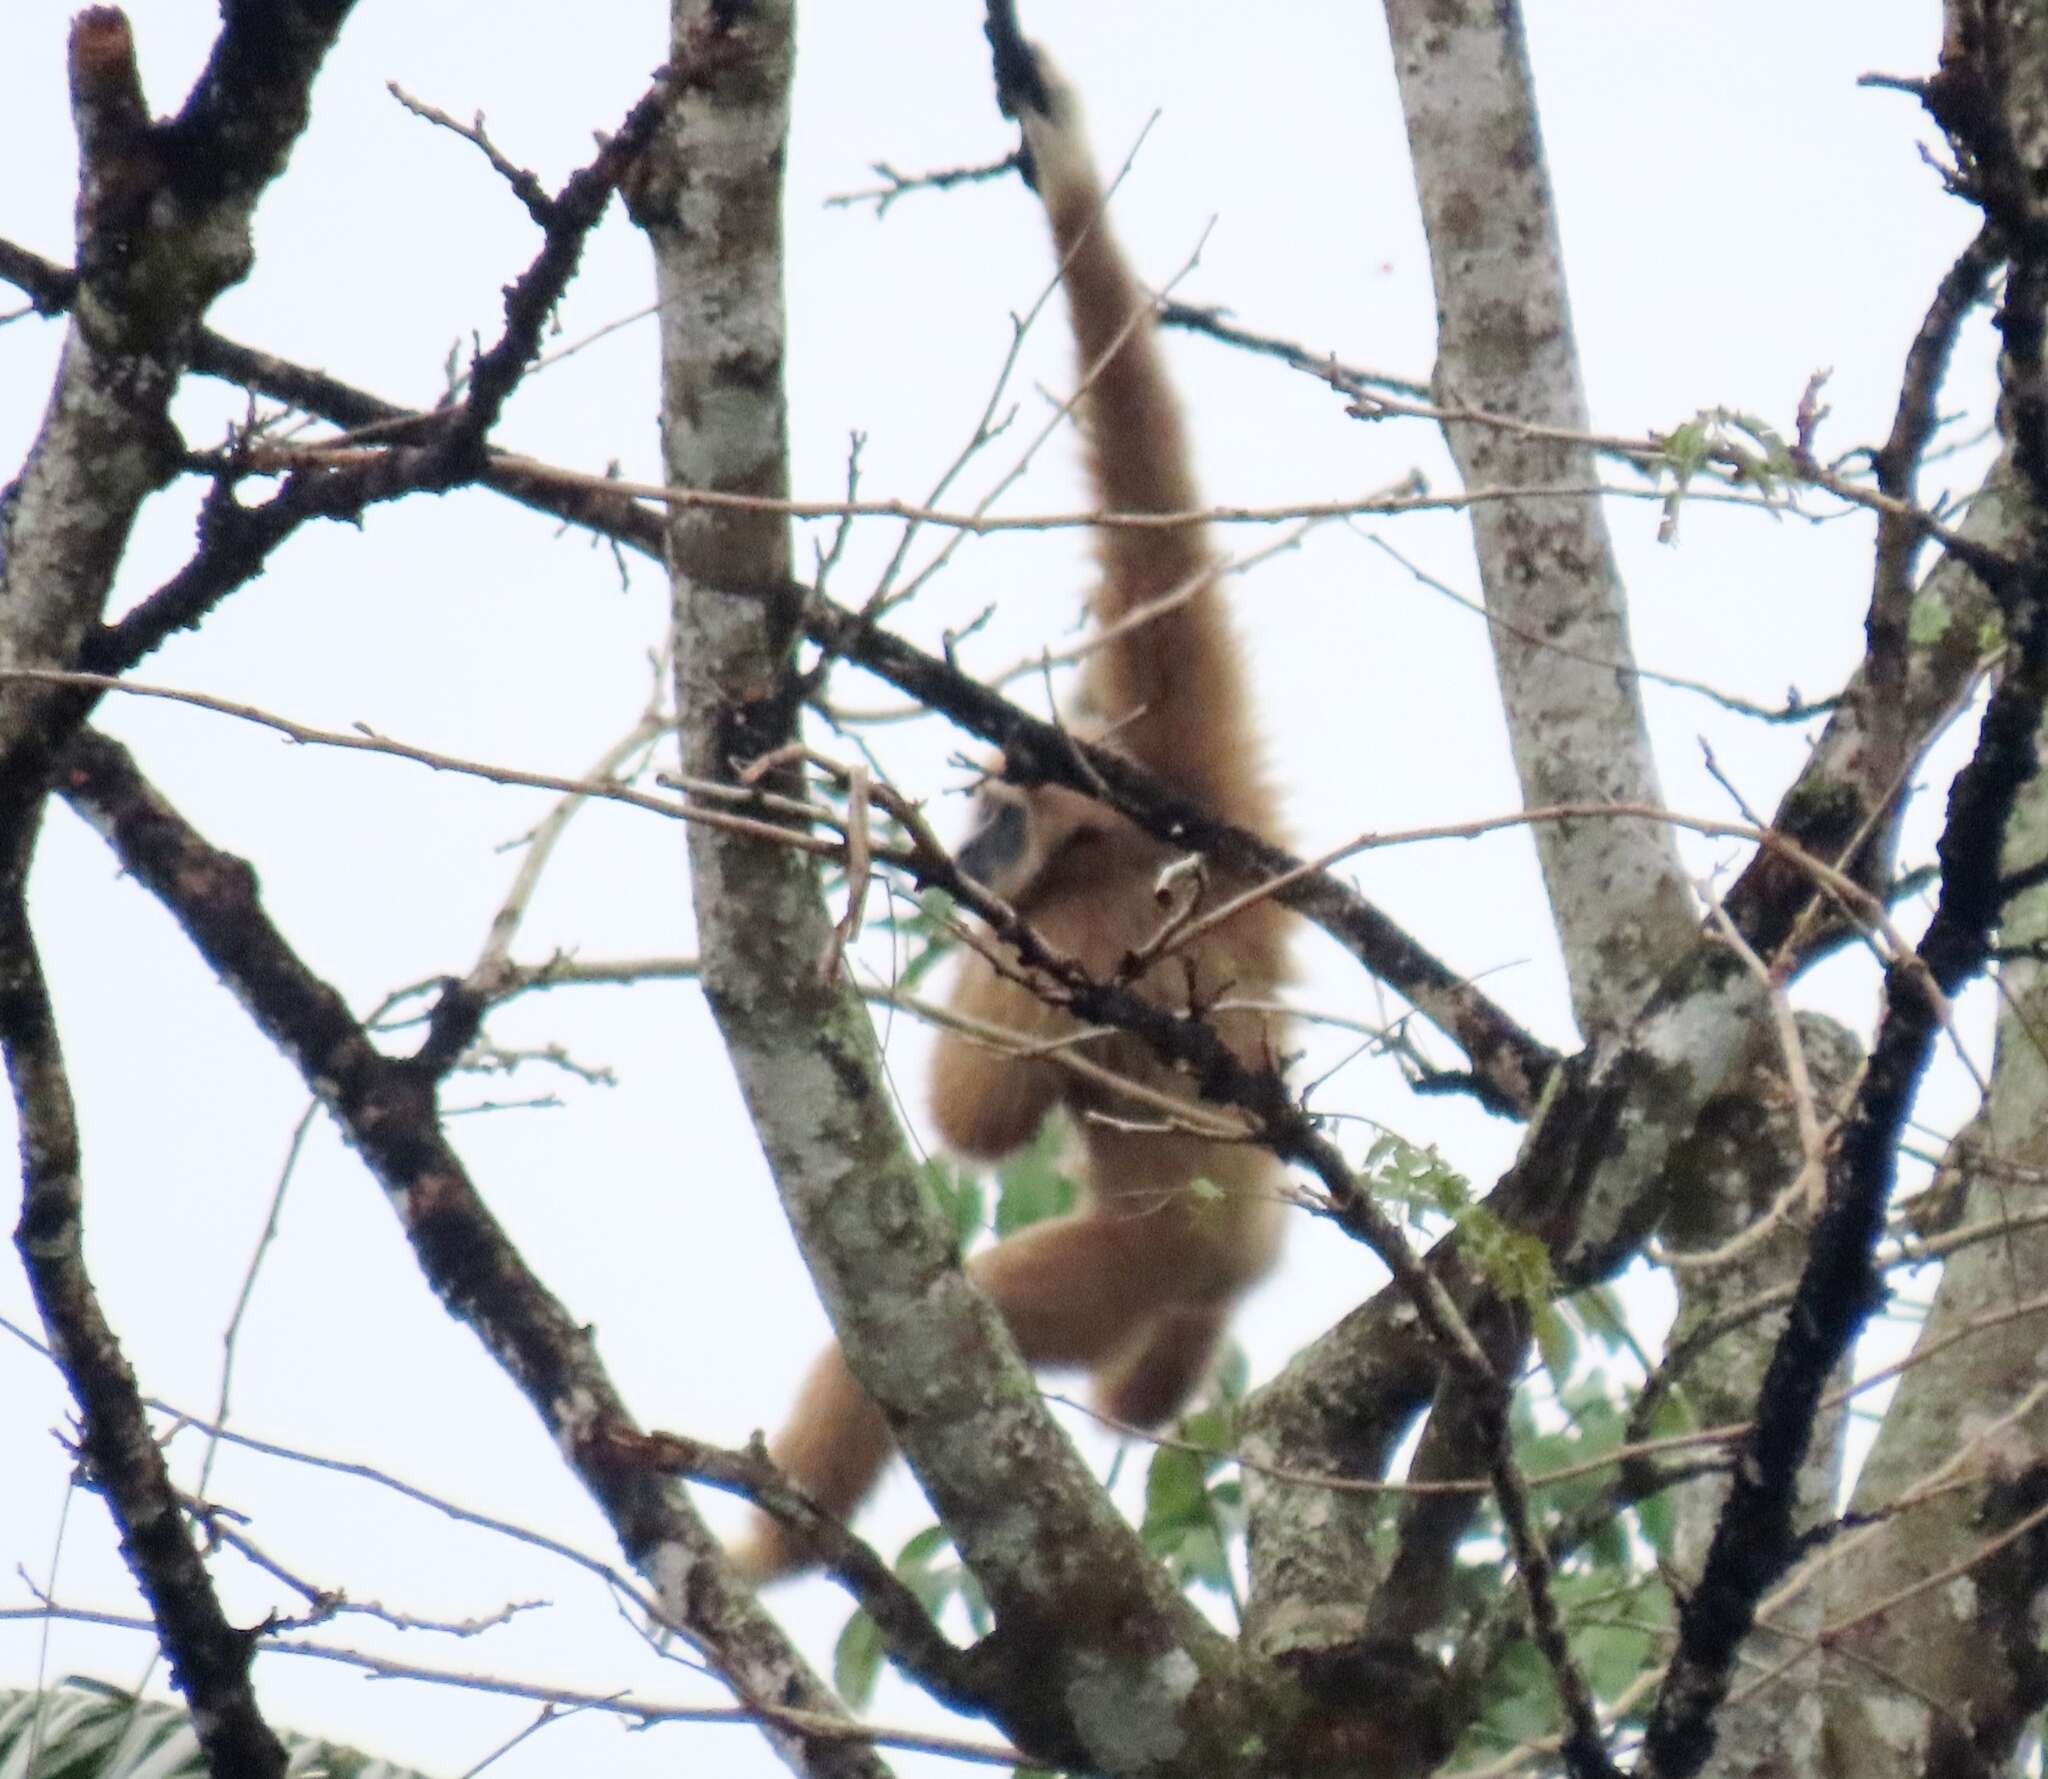 Image of Malayan lar gibbon